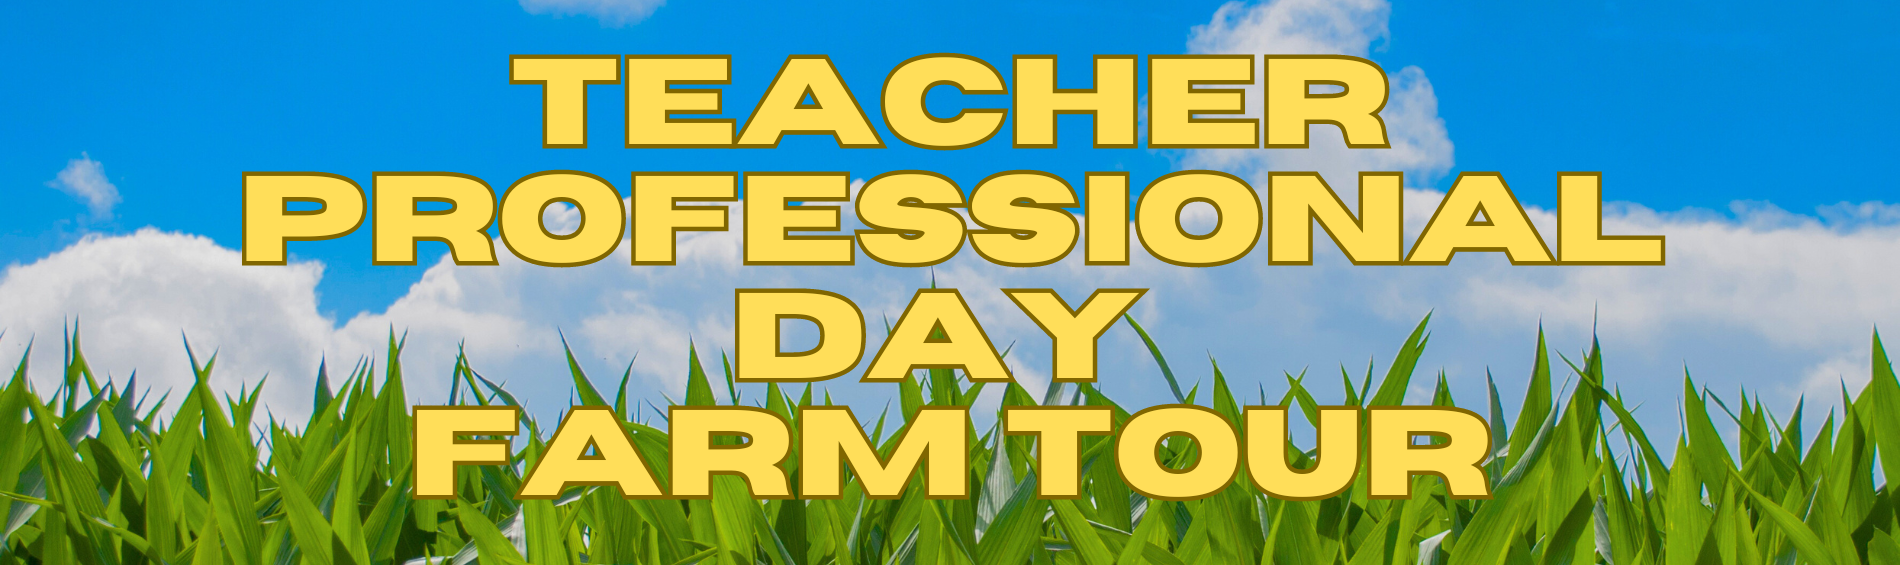 Teacher Professional Day Farm Tour